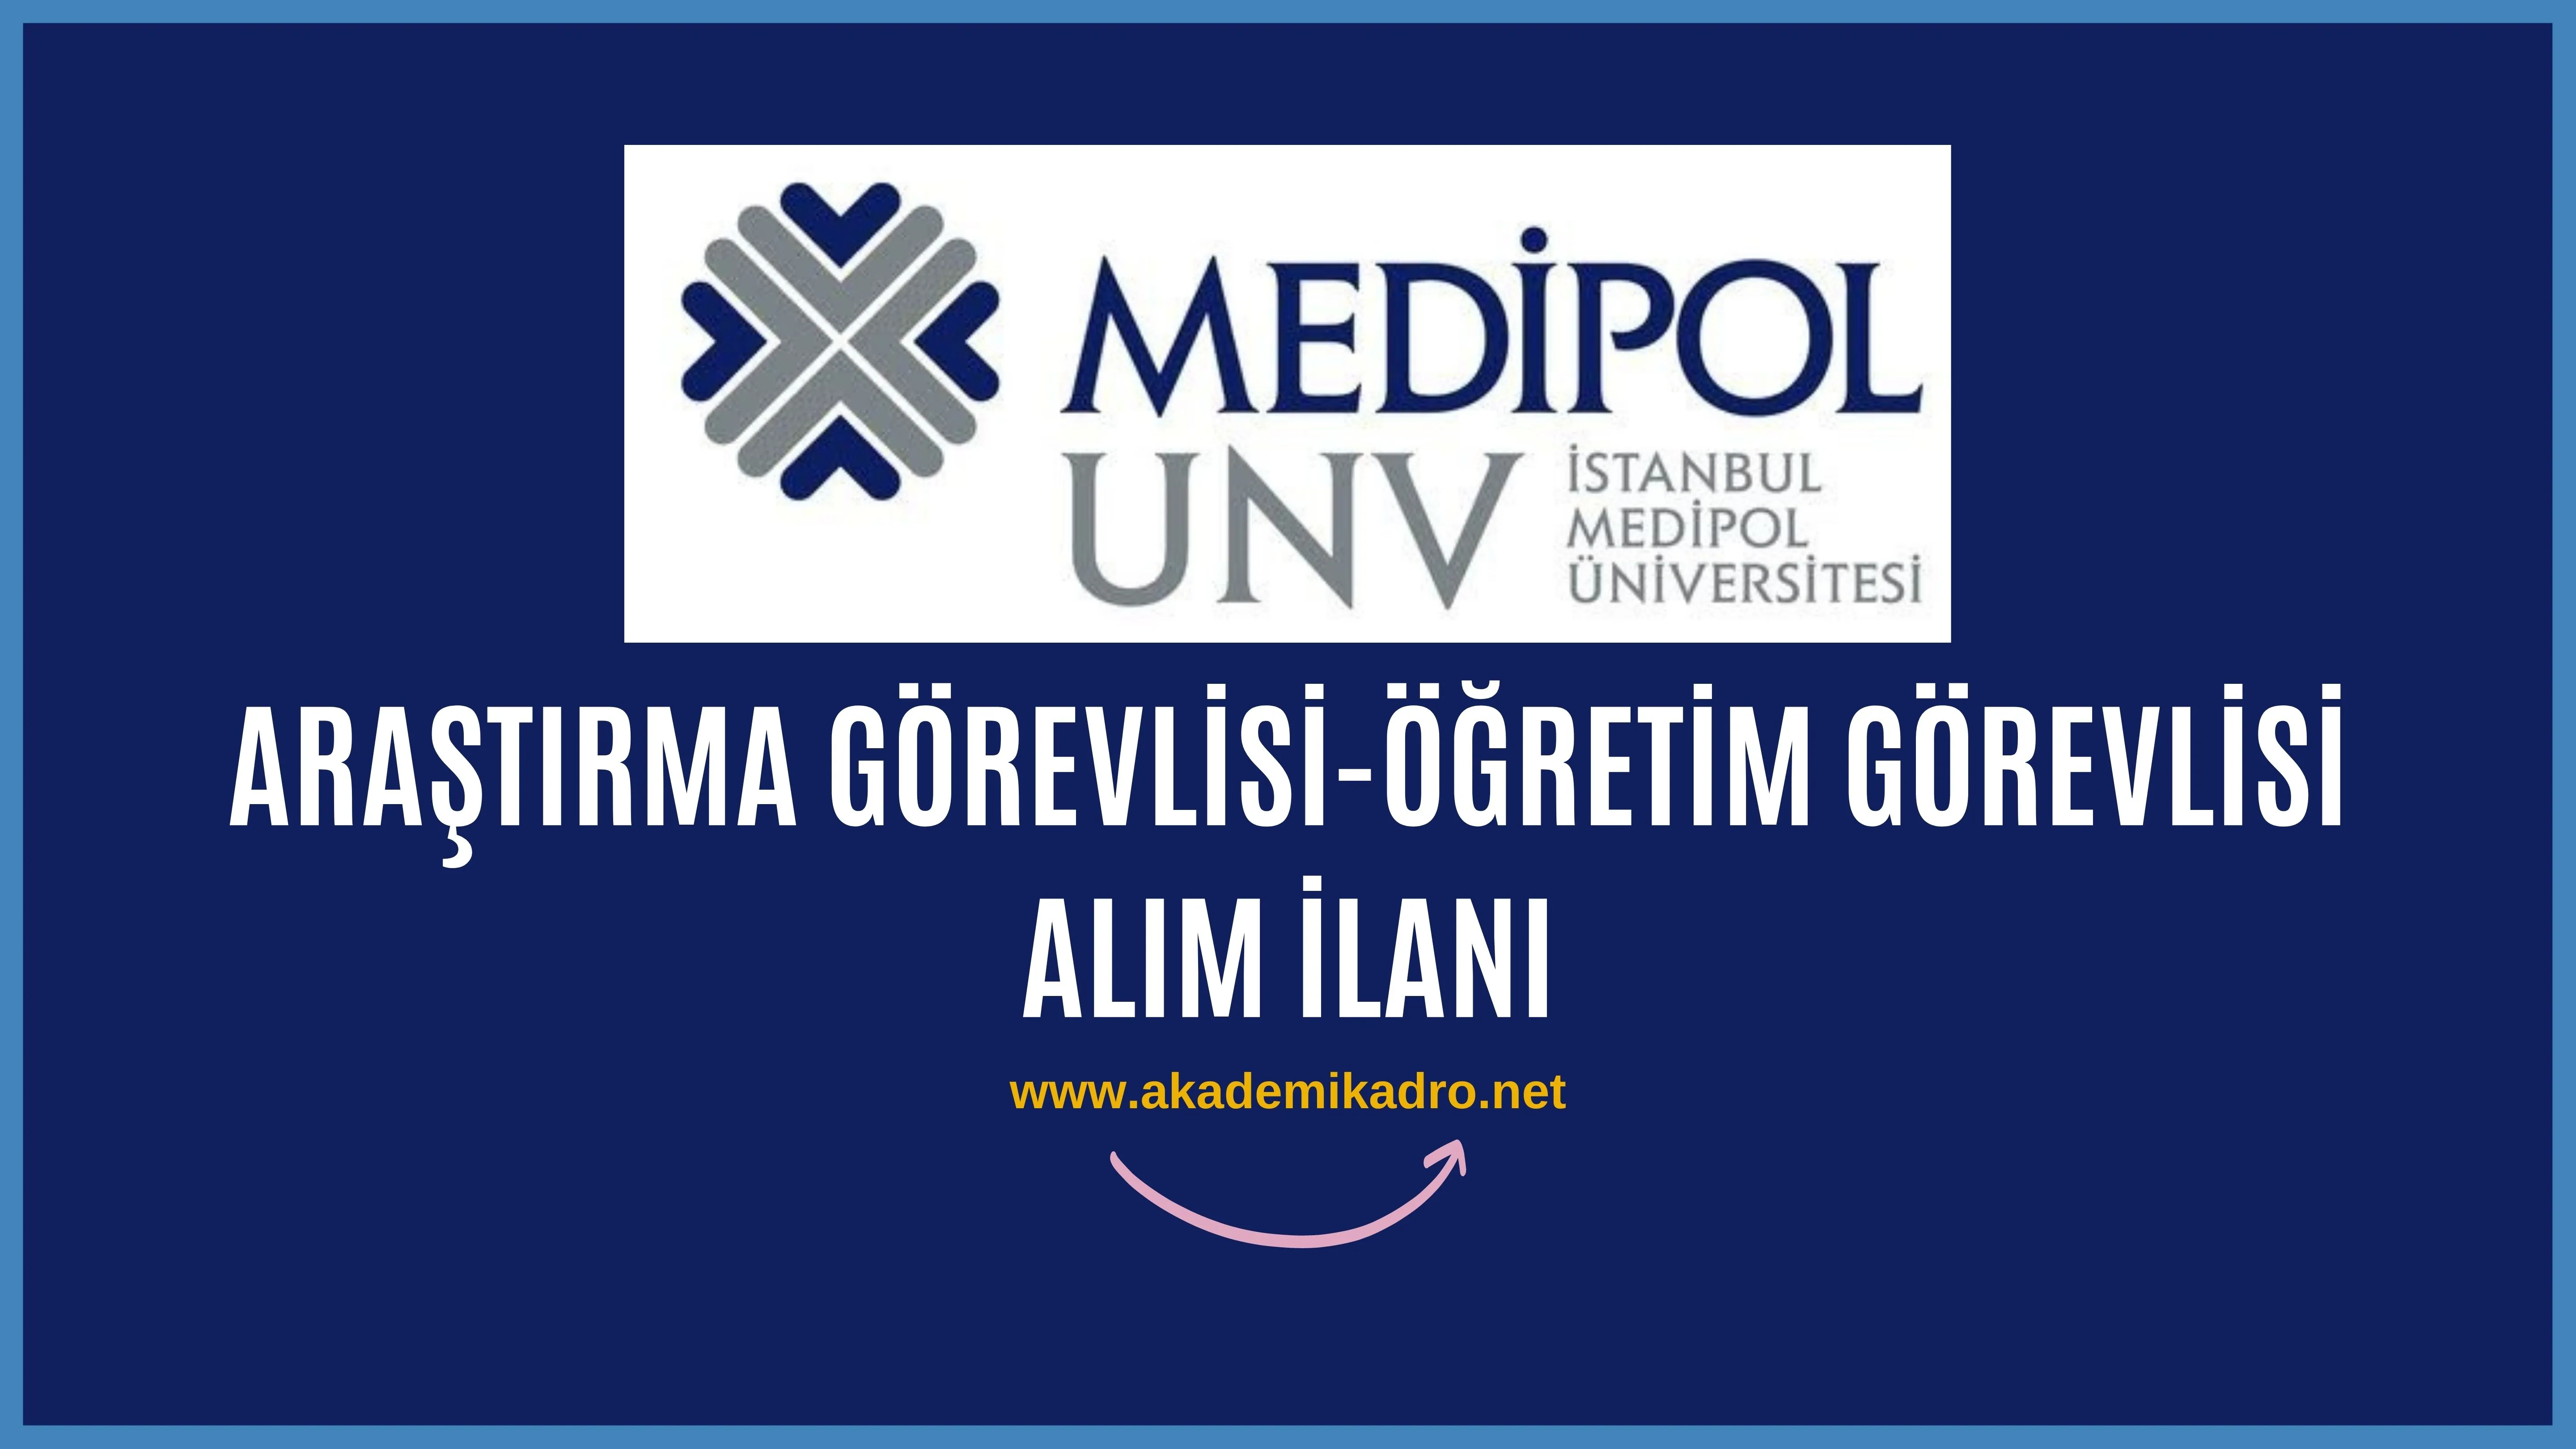 İstanbul Medipol Üniversitesi 17 Araştırma görevlisi ve 4 Öğretim görevlisi alacaktır.